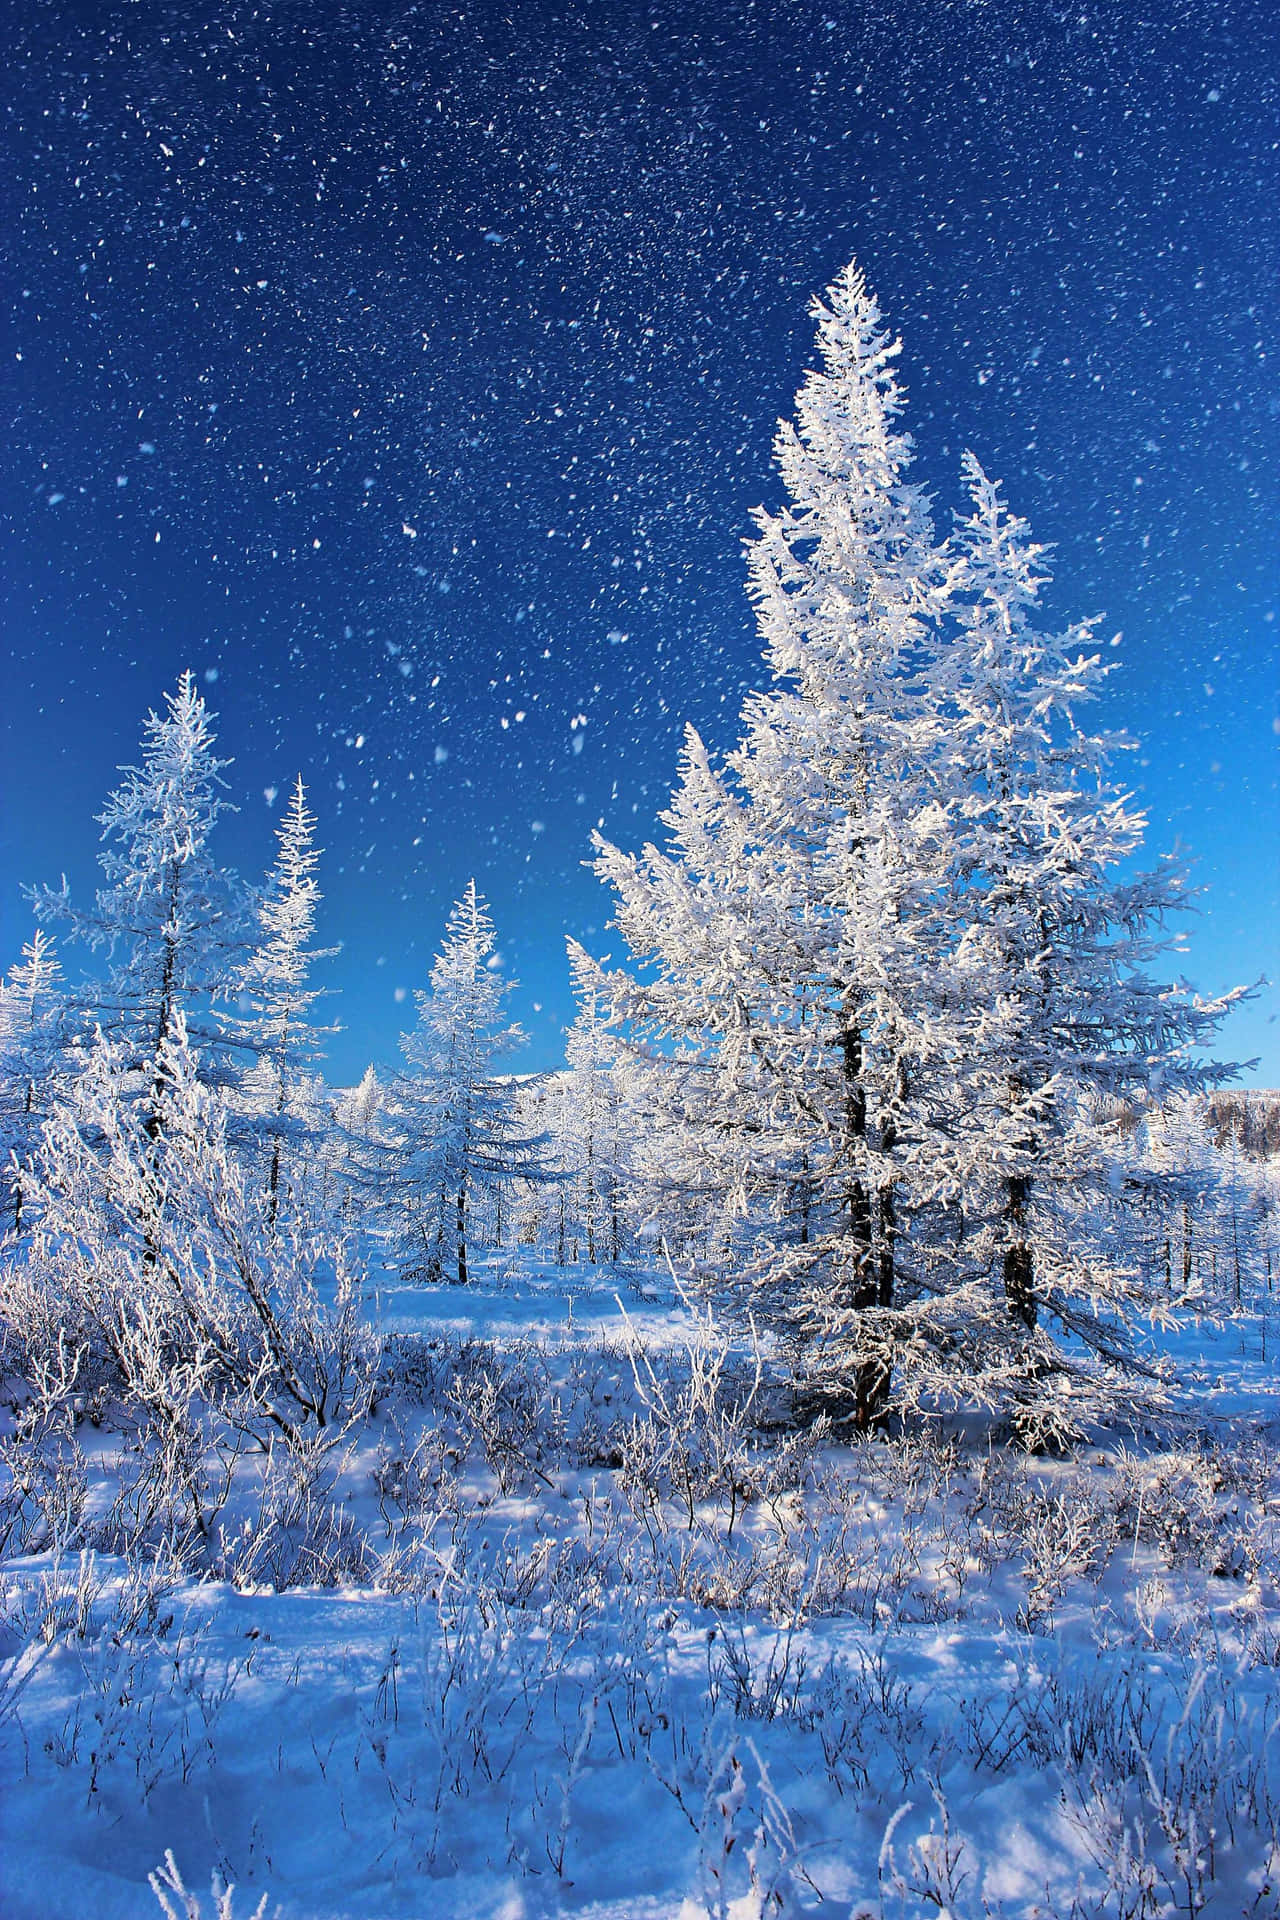 Winter Wonderland Snowfall.jpg Wallpaper